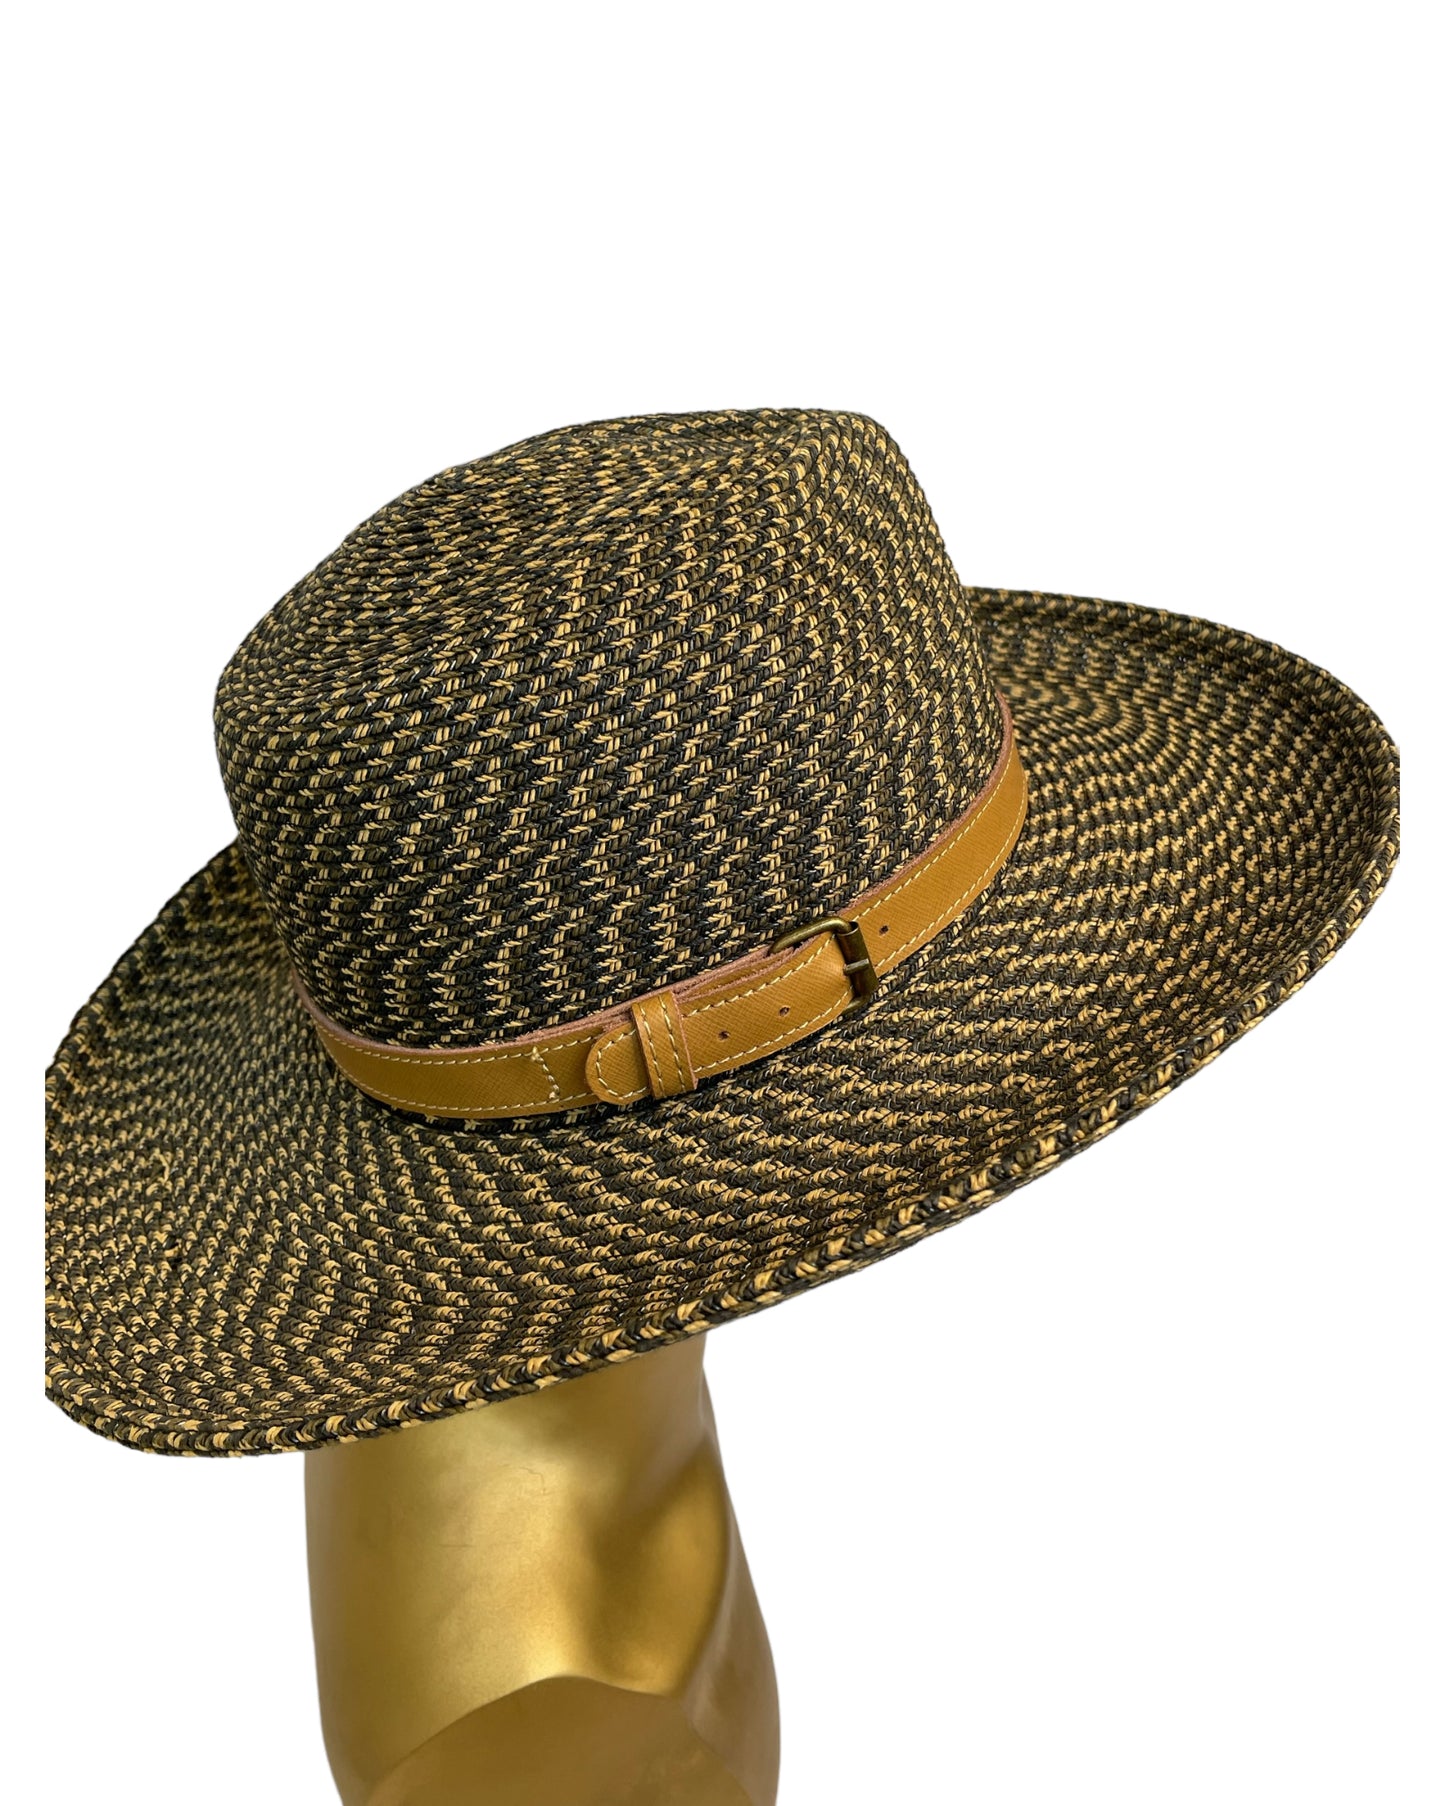 Vintage Indiana Jones Hat